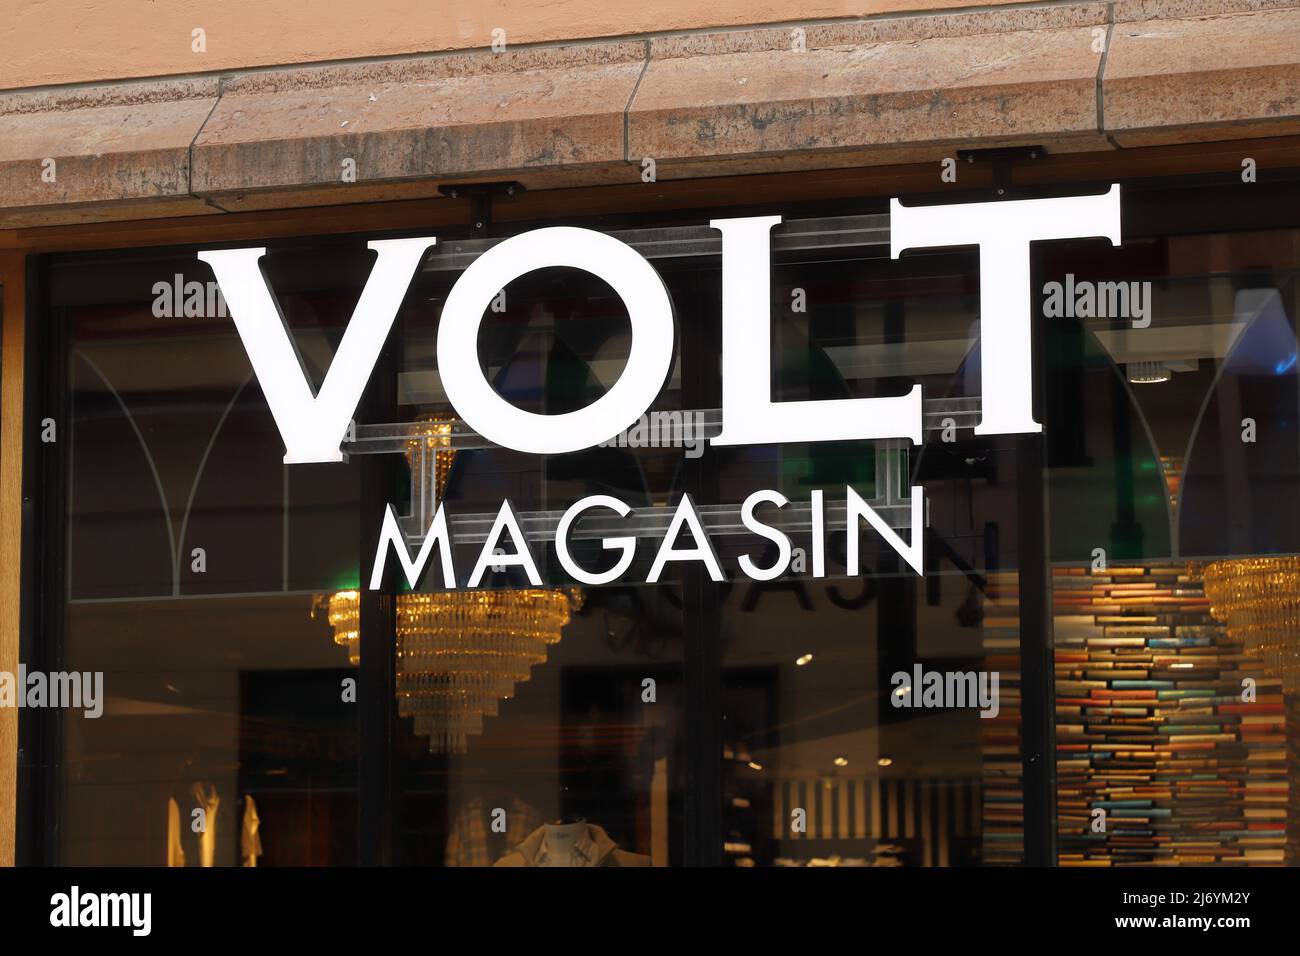 Orebro, Suecia - 24 de abril de 2022: Vista de cerca de la tienda de moda Volt Magasin Volt Nagasib situada en la calle Drottninggatan en el centro de Orebro. Foto de stock